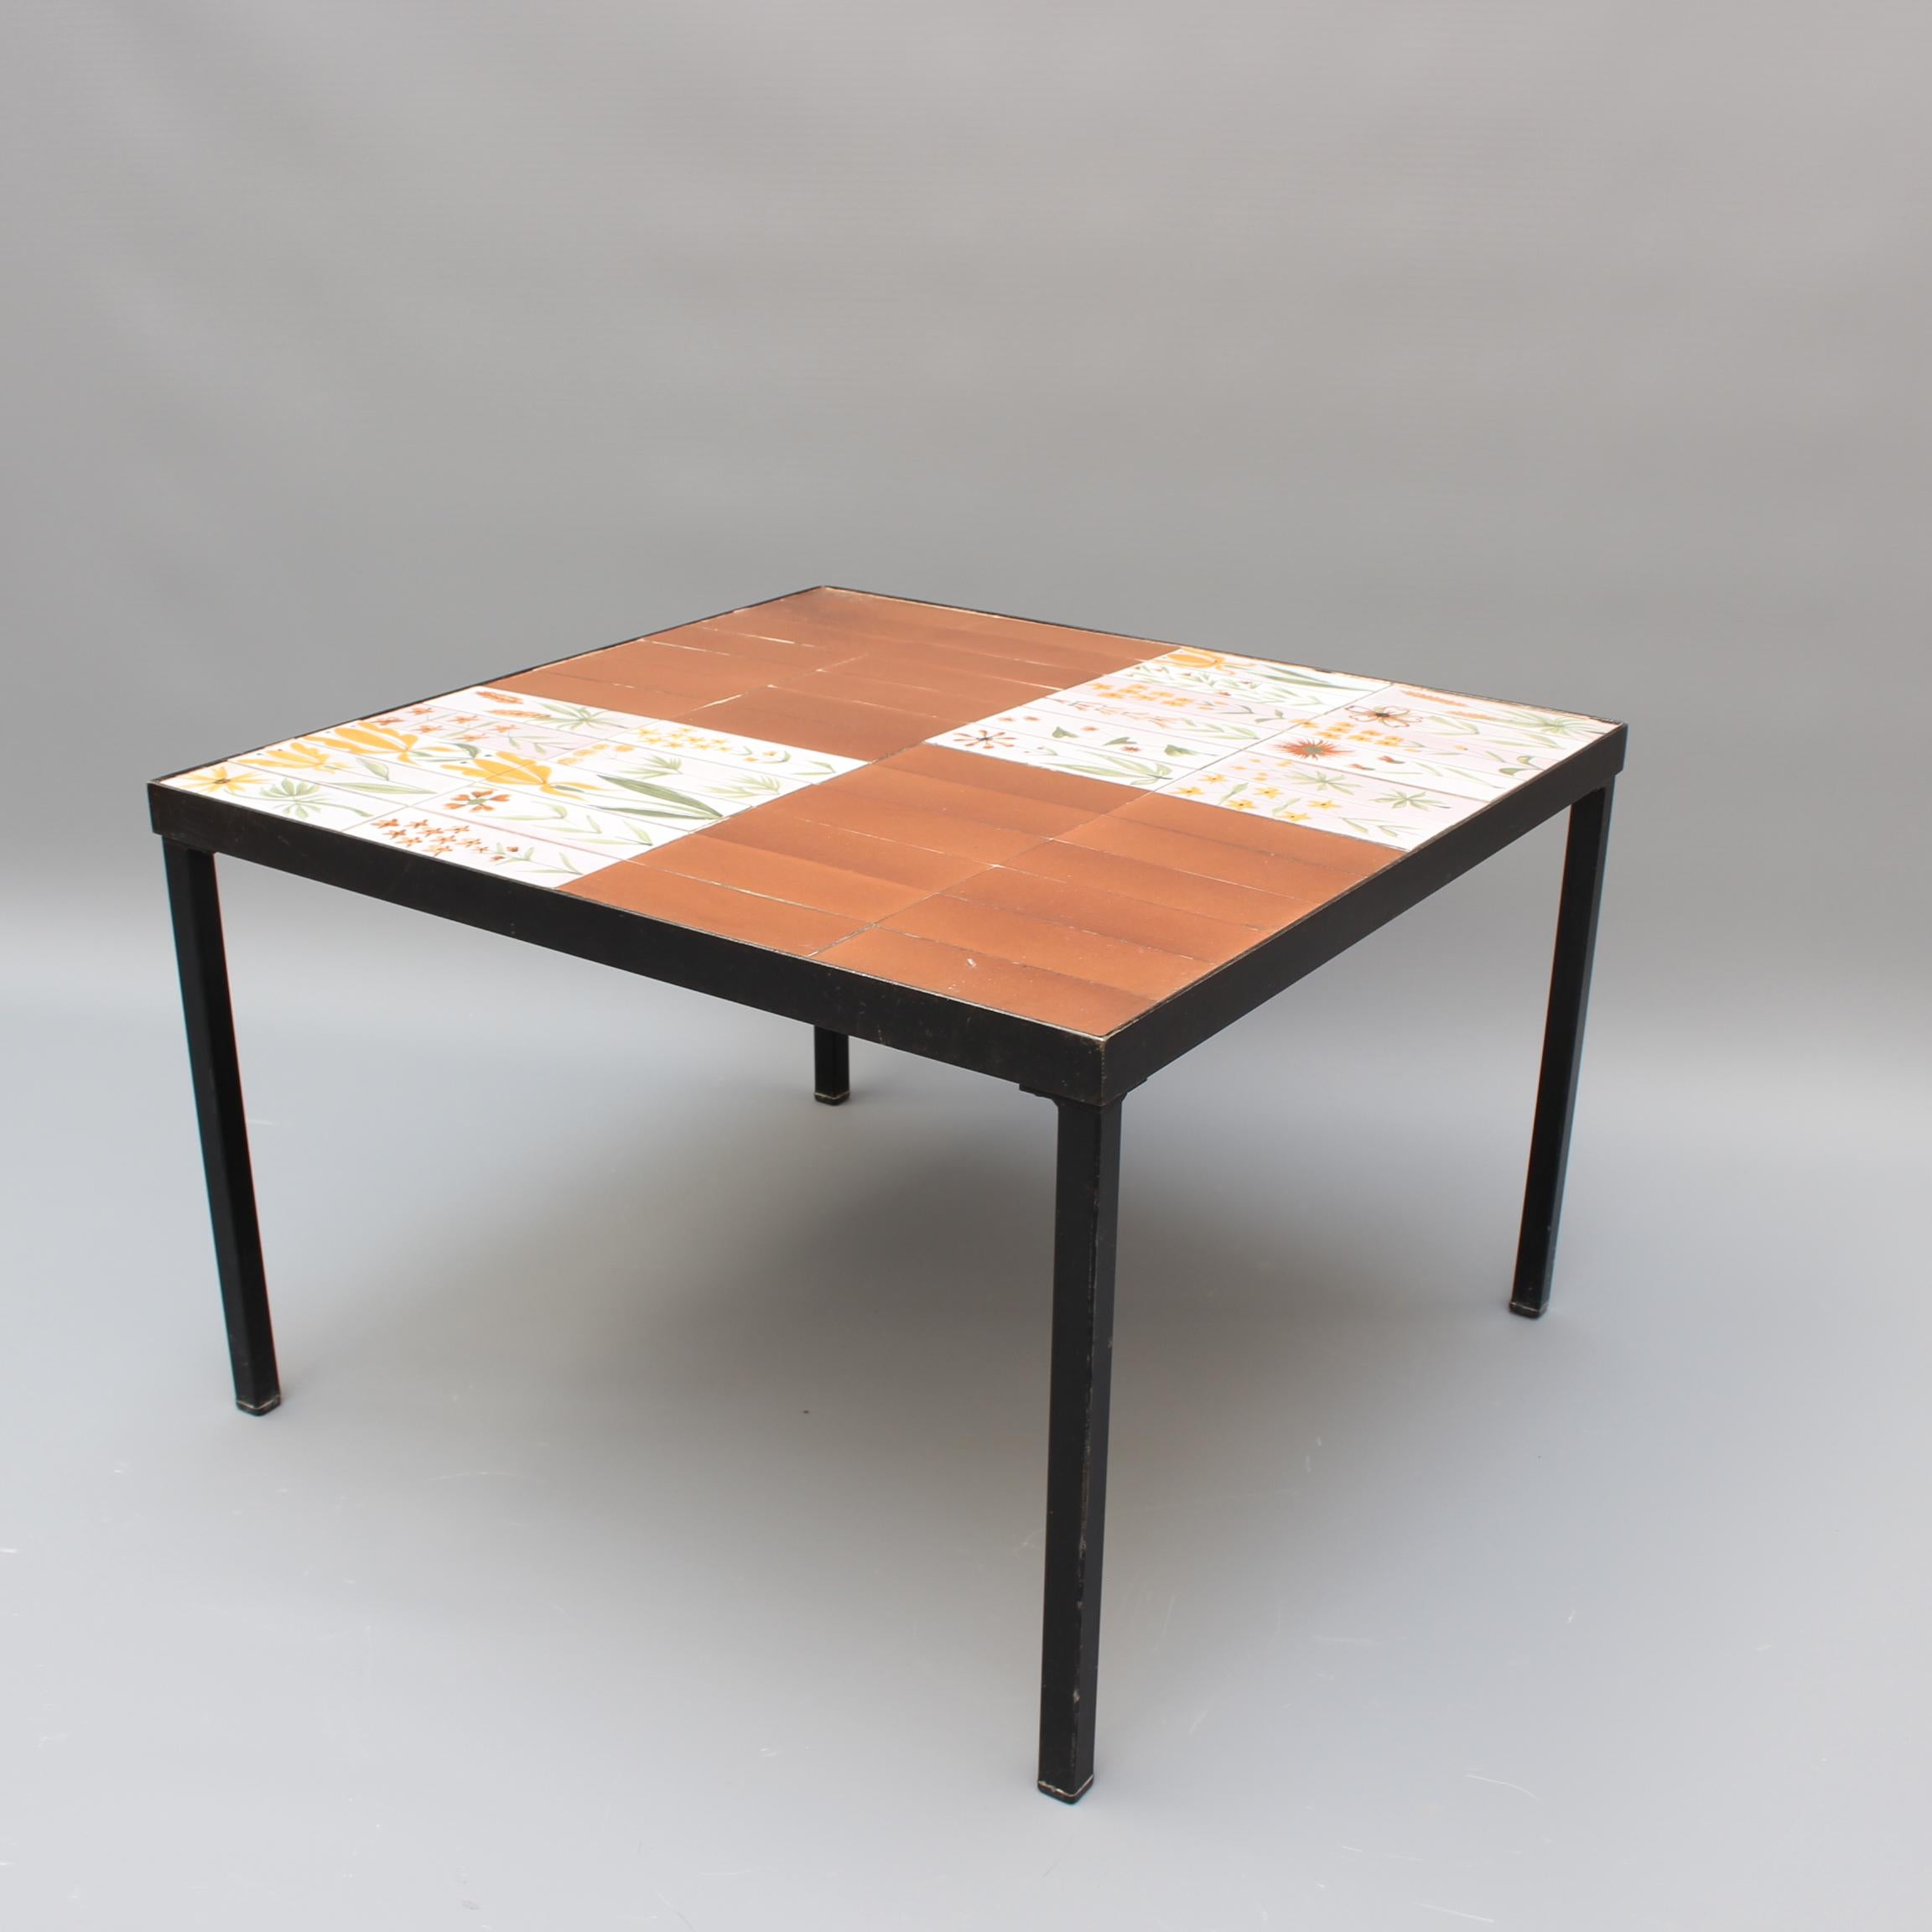 Table basse avec des carreaux de céramique décoratifs de l'artiste Roger Capron. Cette charmante table (datant des années 1970) est un exemple typique de la collection Capron. Il y a des tuiles sur le thème du jardin avec une variété de belles